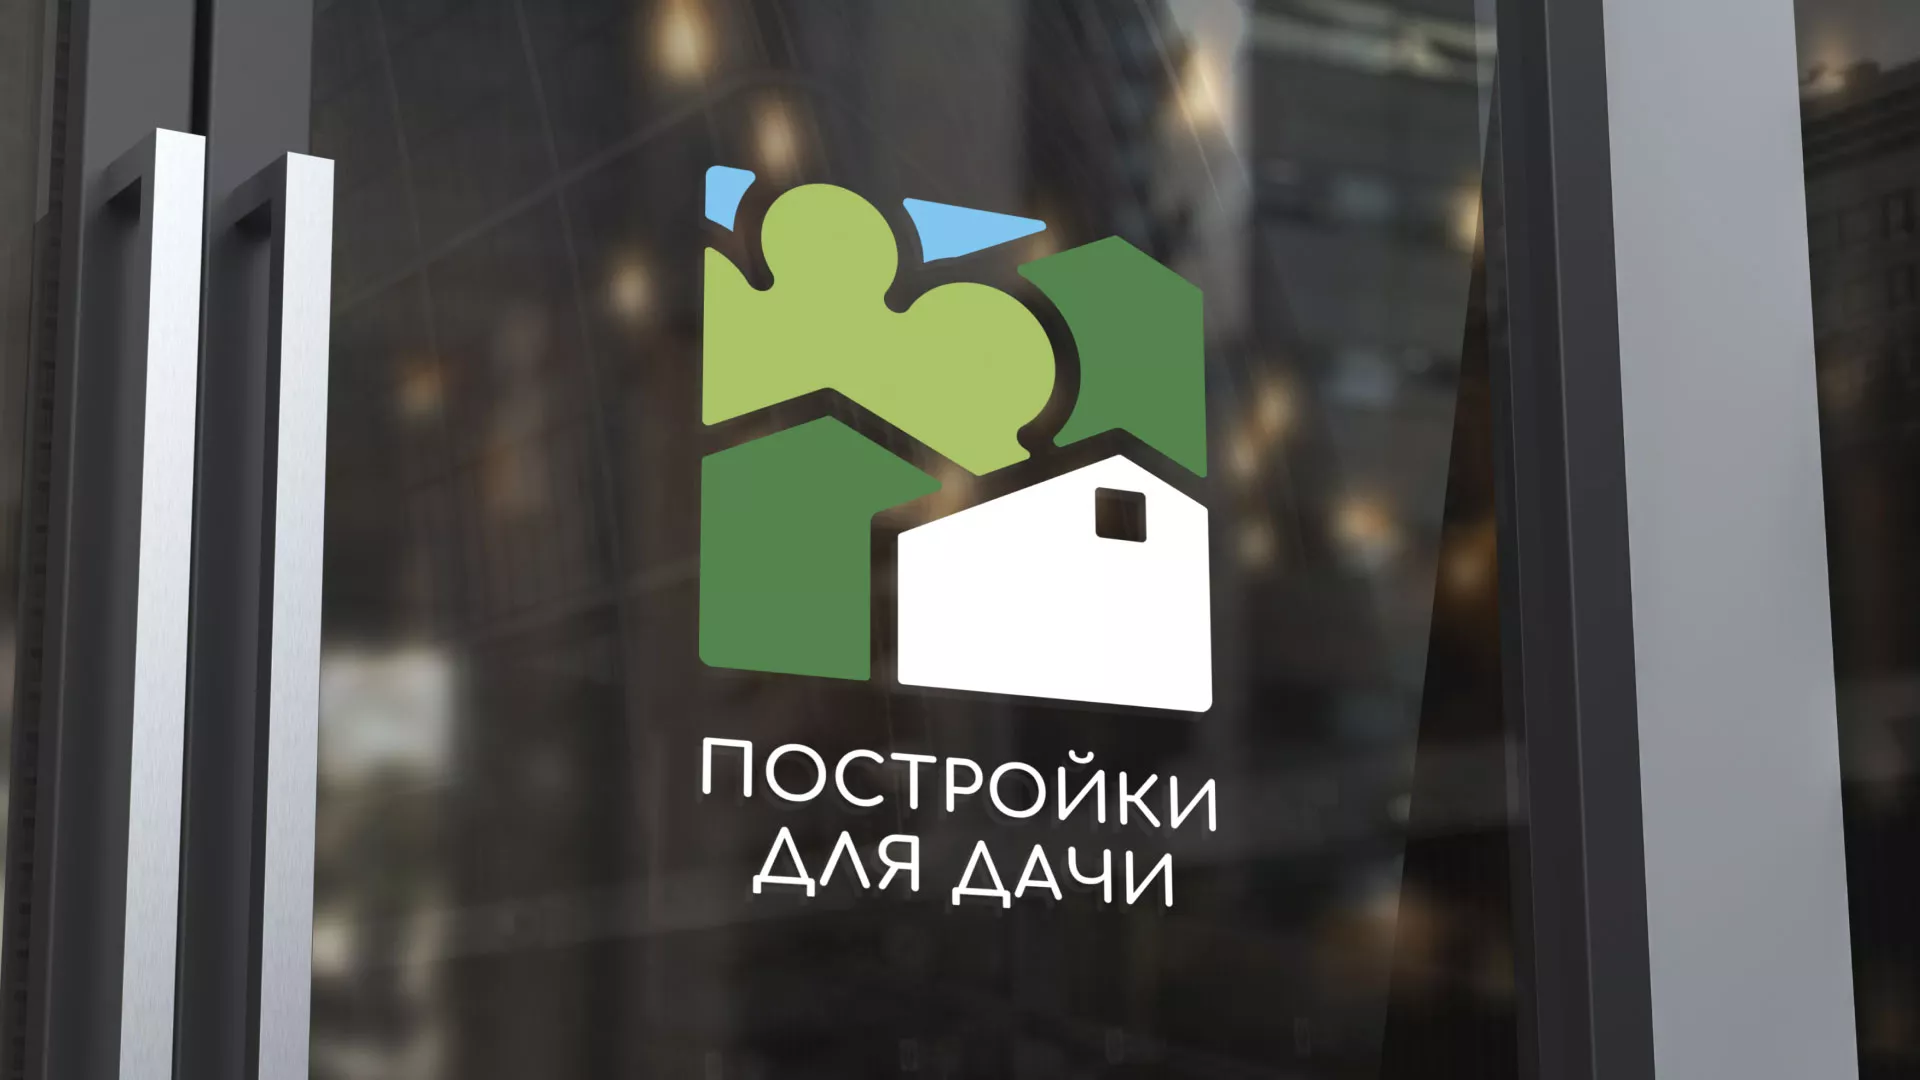 Разработка логотипа в Славске для компании «Постройки для дачи»